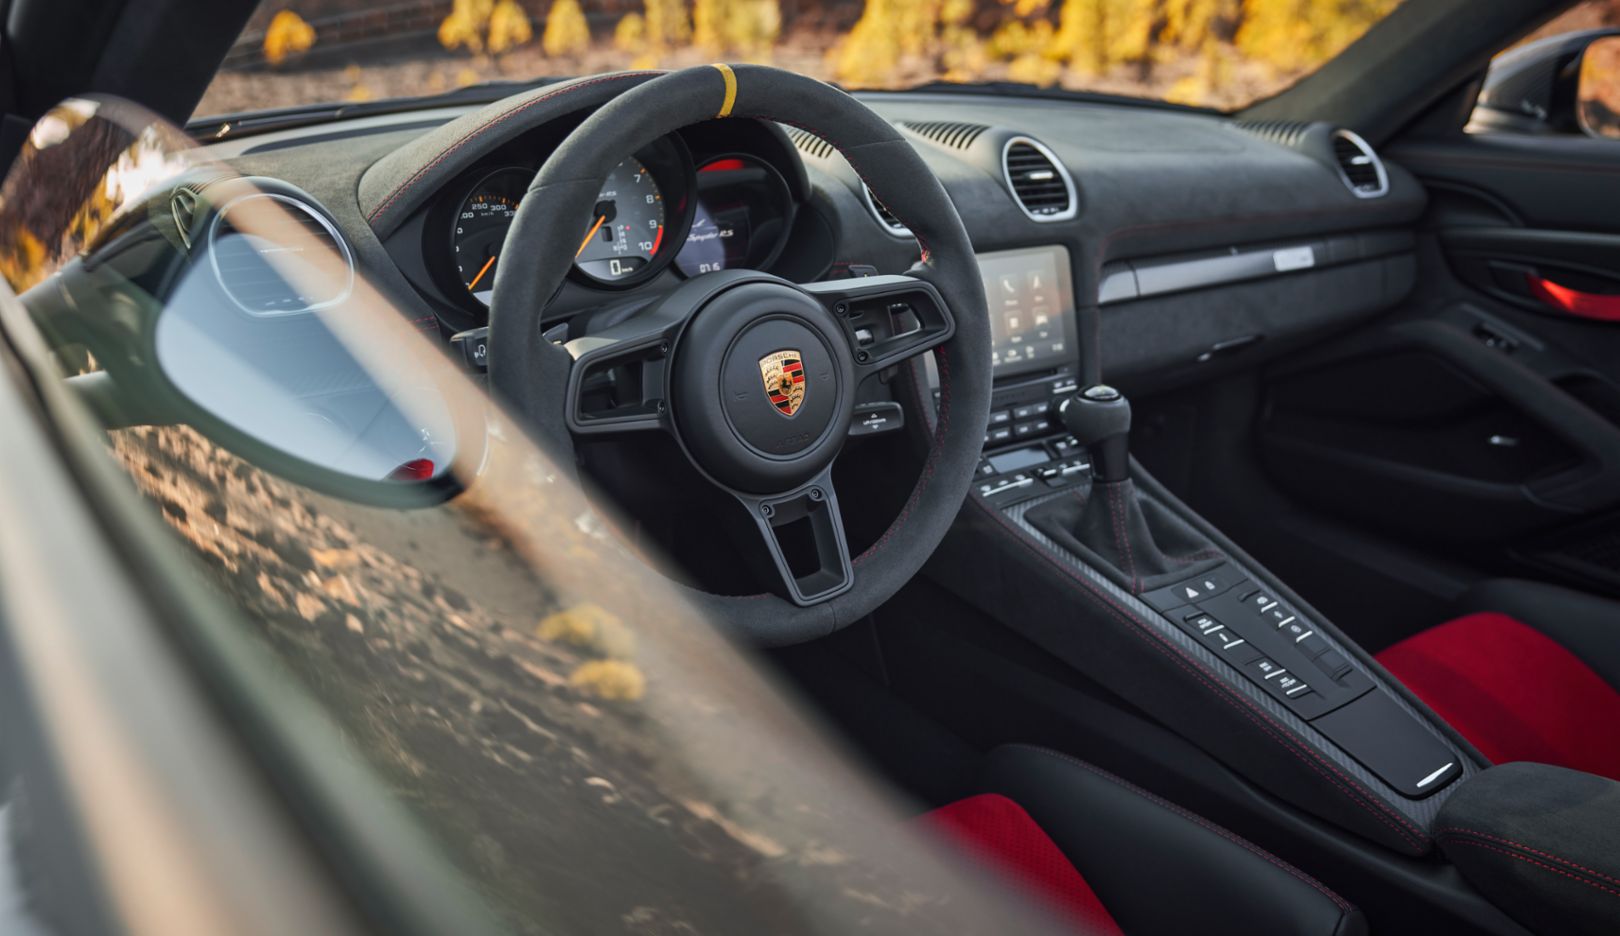 모터스포츠 특성과 함께 즐기는 오픈탑 드라이빙: 718 스파이더 RS의 전형적인 스티어링 휠에는 12시 방향 표시가 있다.